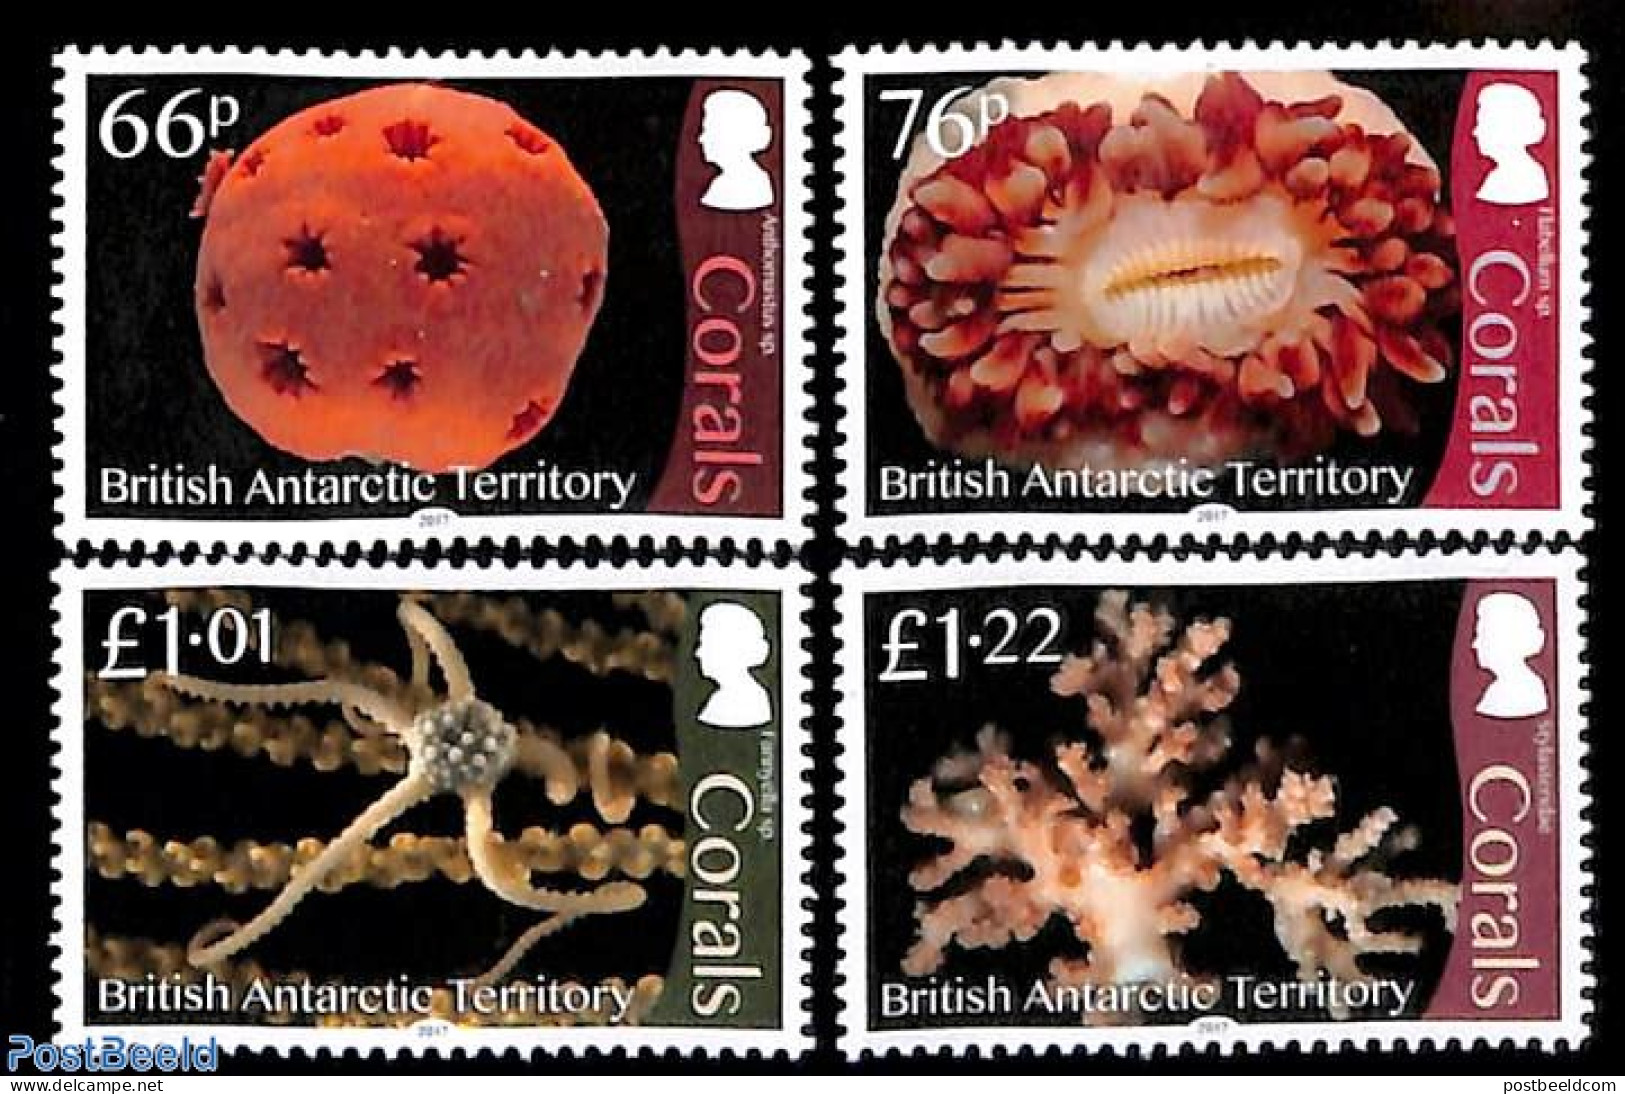 British Antarctica 2017 Corals 4v, Mint NH, Nature - Shells & Crustaceans - Marine Life